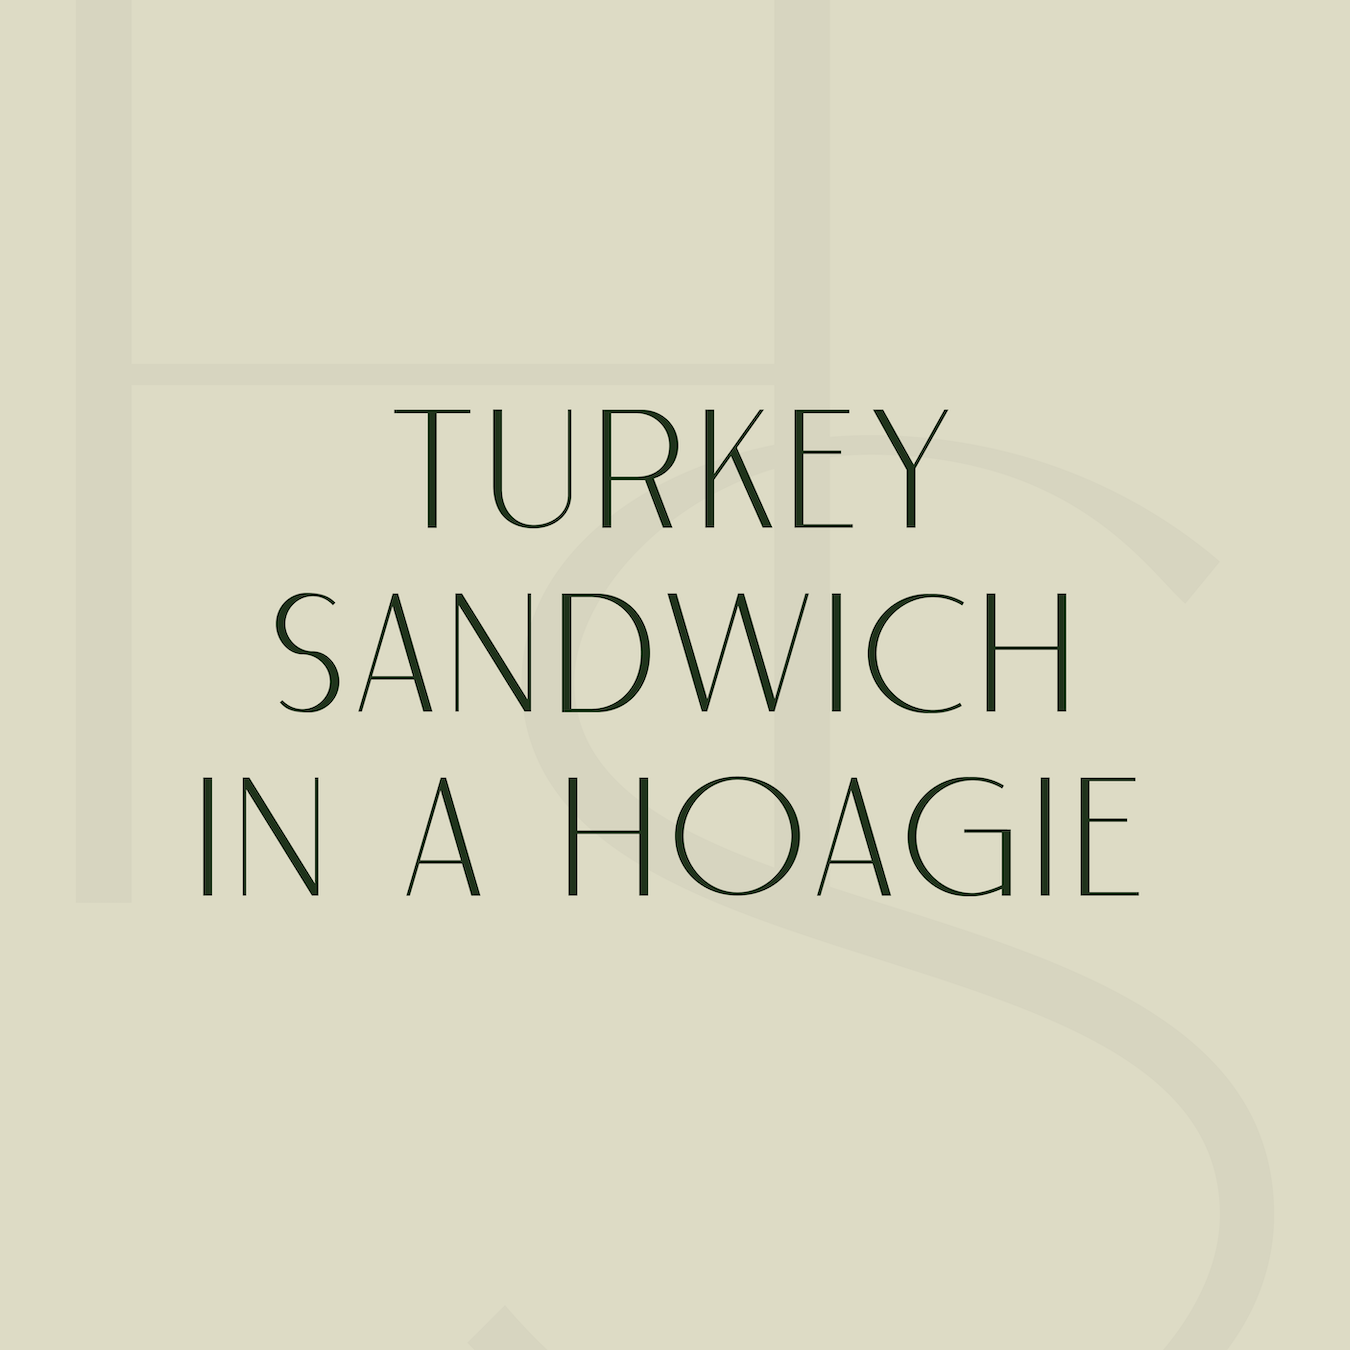 Turkey Sandwich in a Hoagie